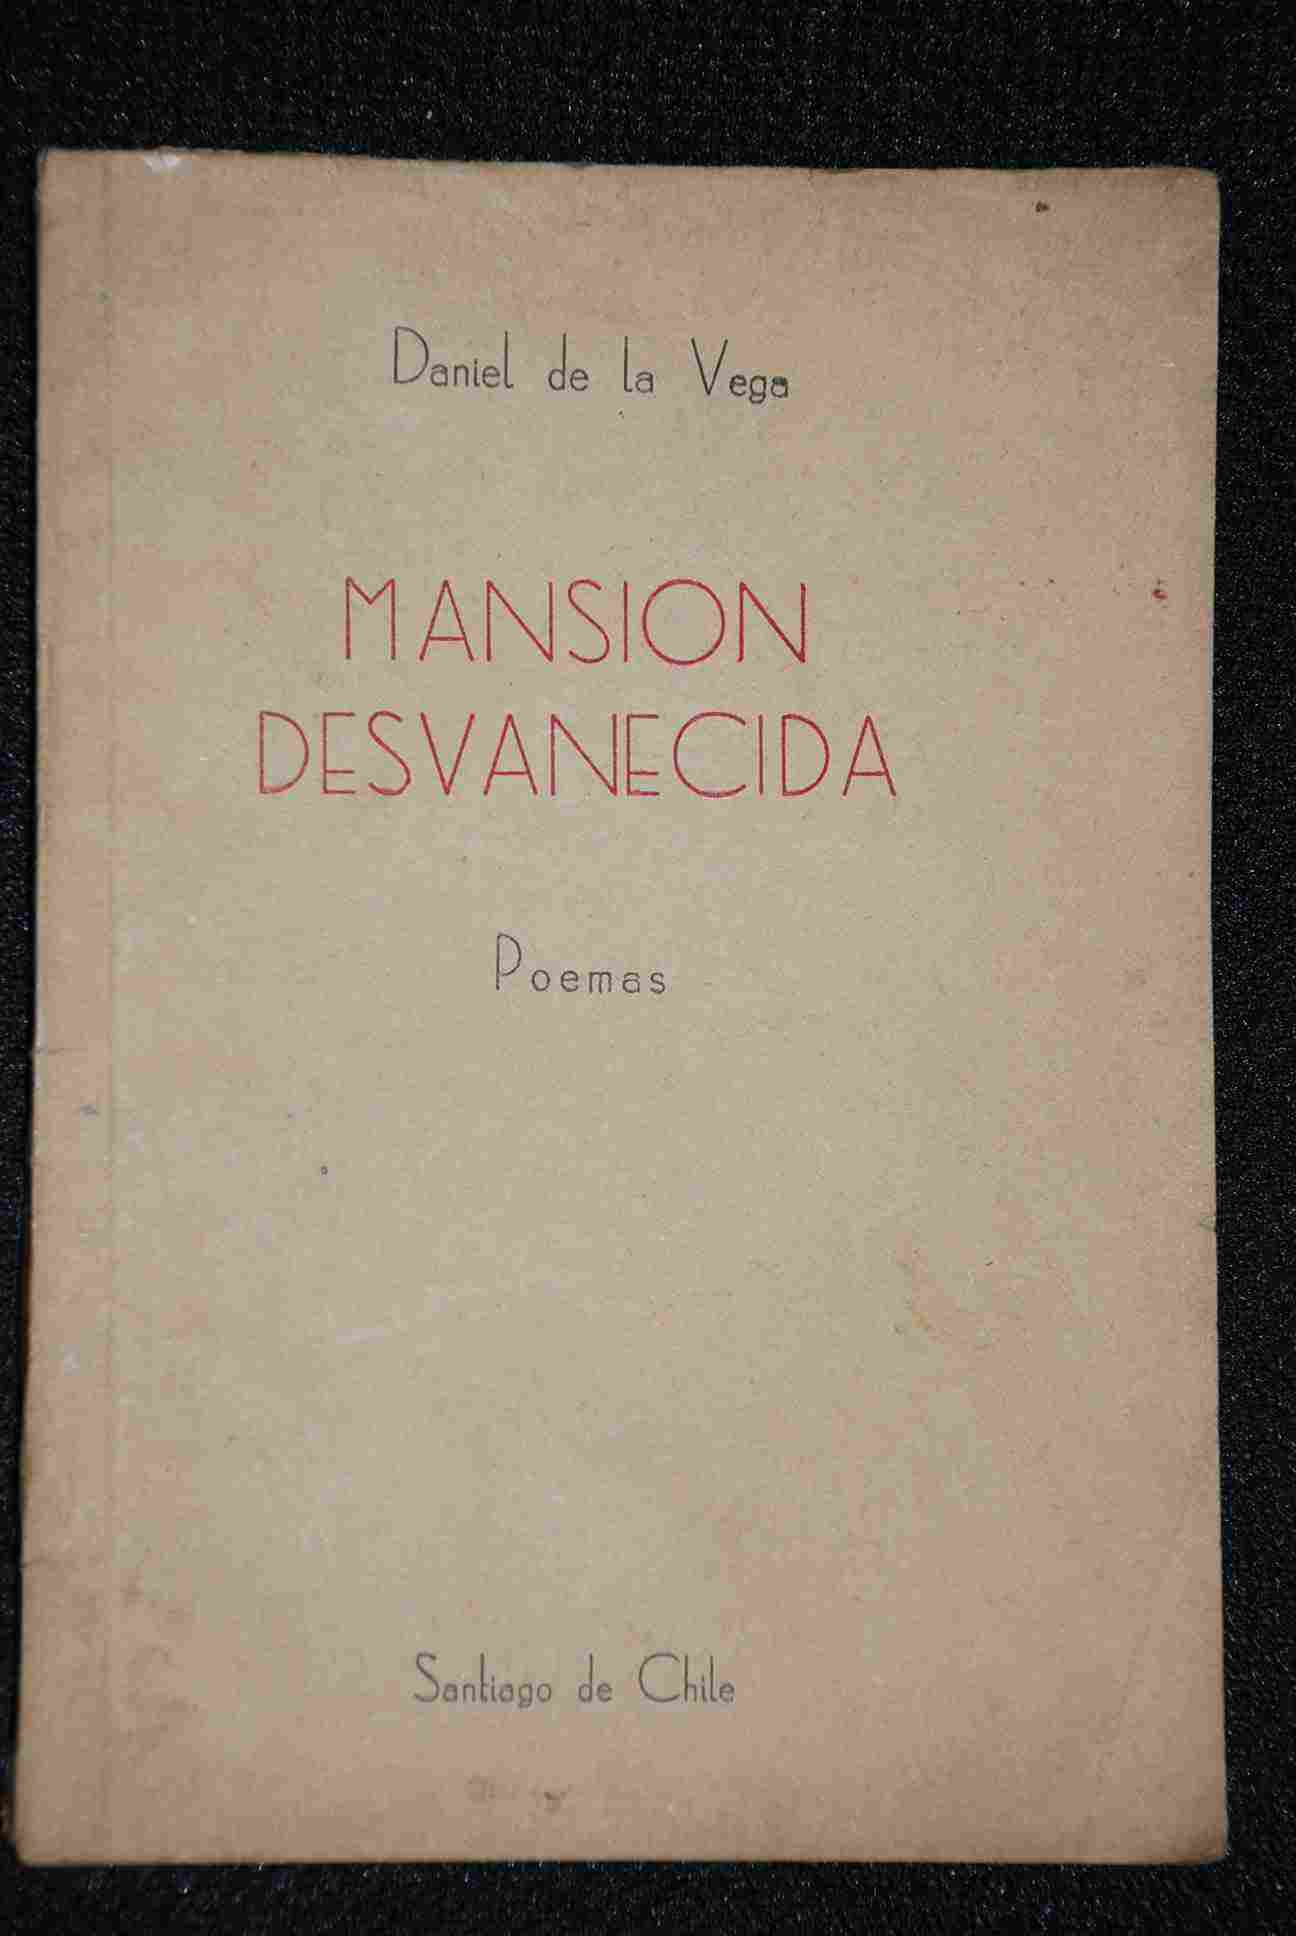 Daniel de La Vega - Mansion Desvanecida Poemas